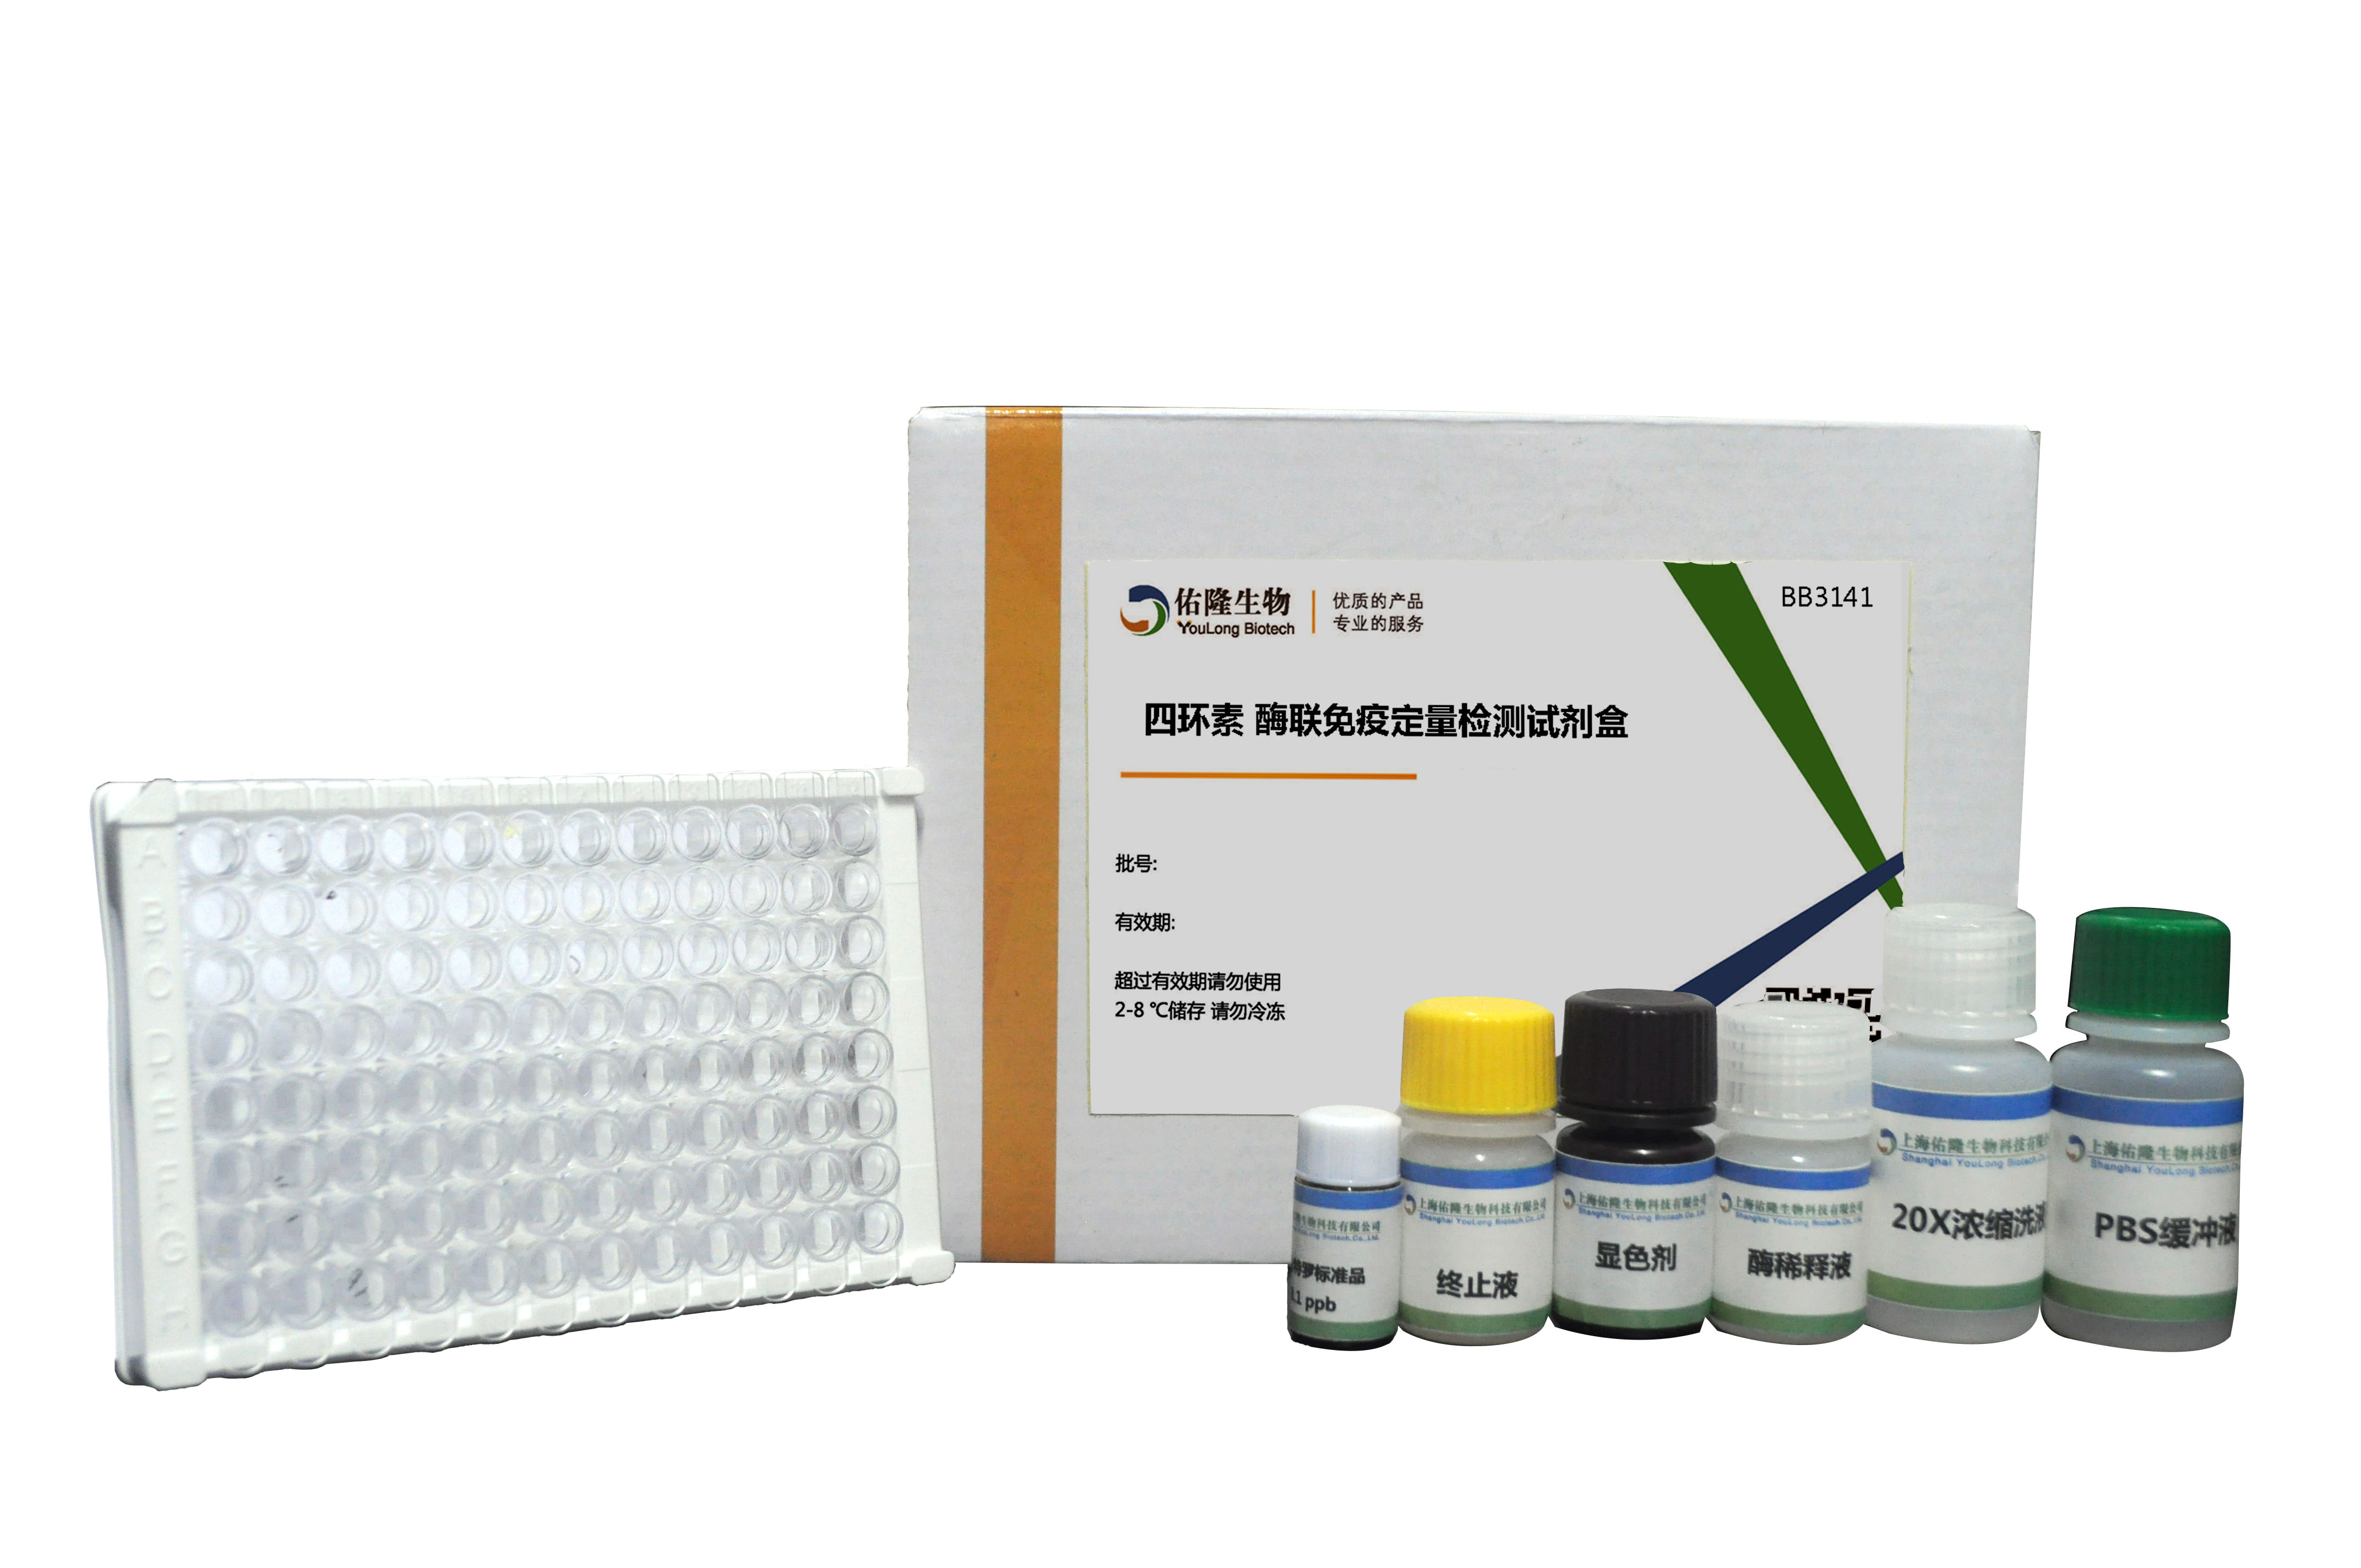 四环素酶联免疫定量检测试剂盒